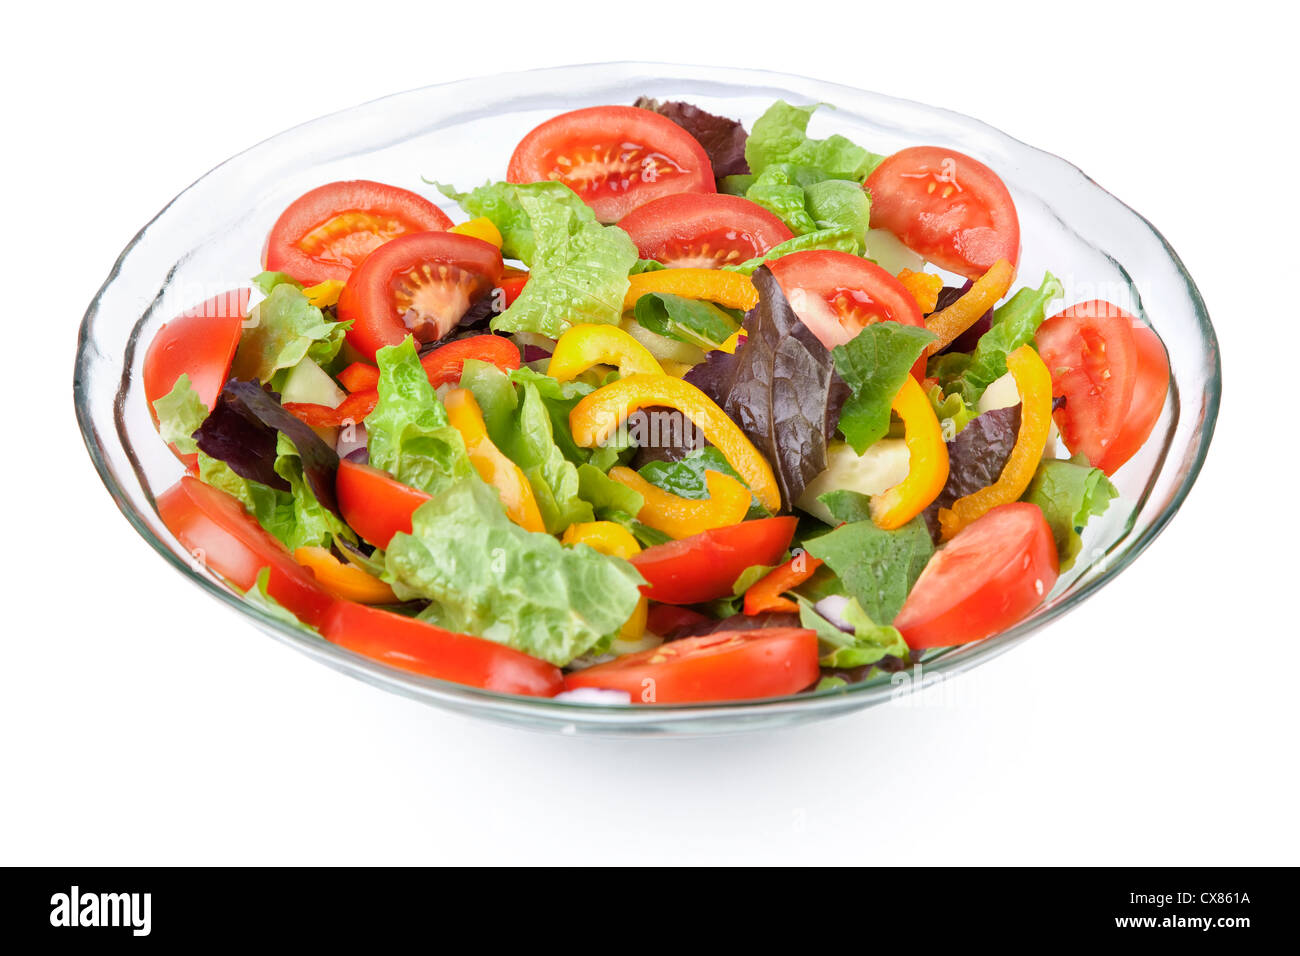 Eine Glasschüssel voll von einer Vielzahl von Gemüse in einem bunt gemischten Salat. Stockfoto